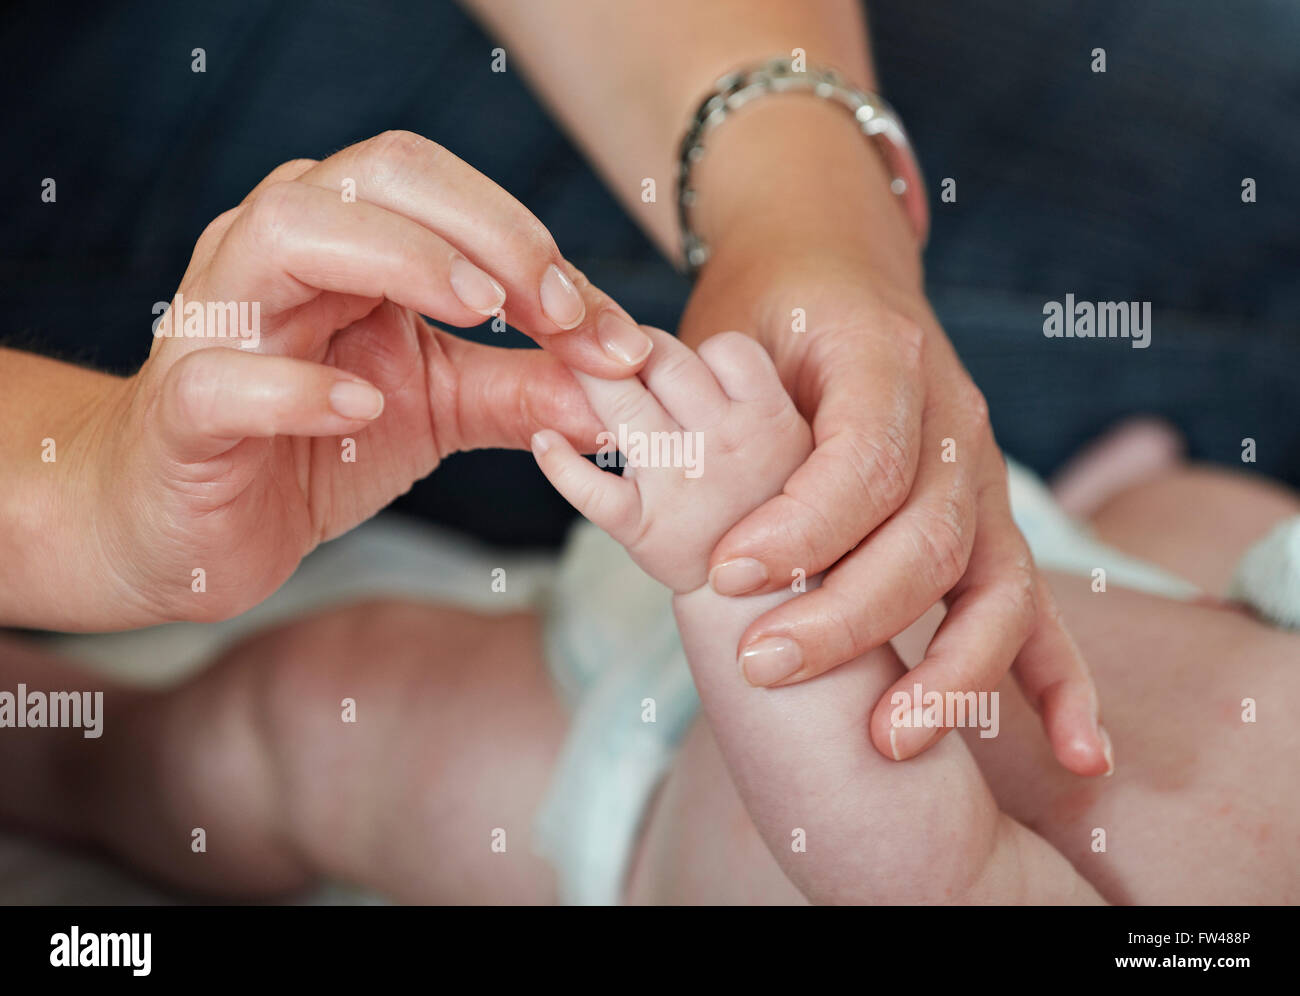 Womans Hände Finger Neugeborenen bei Untersuchung überprüfen Stockfoto